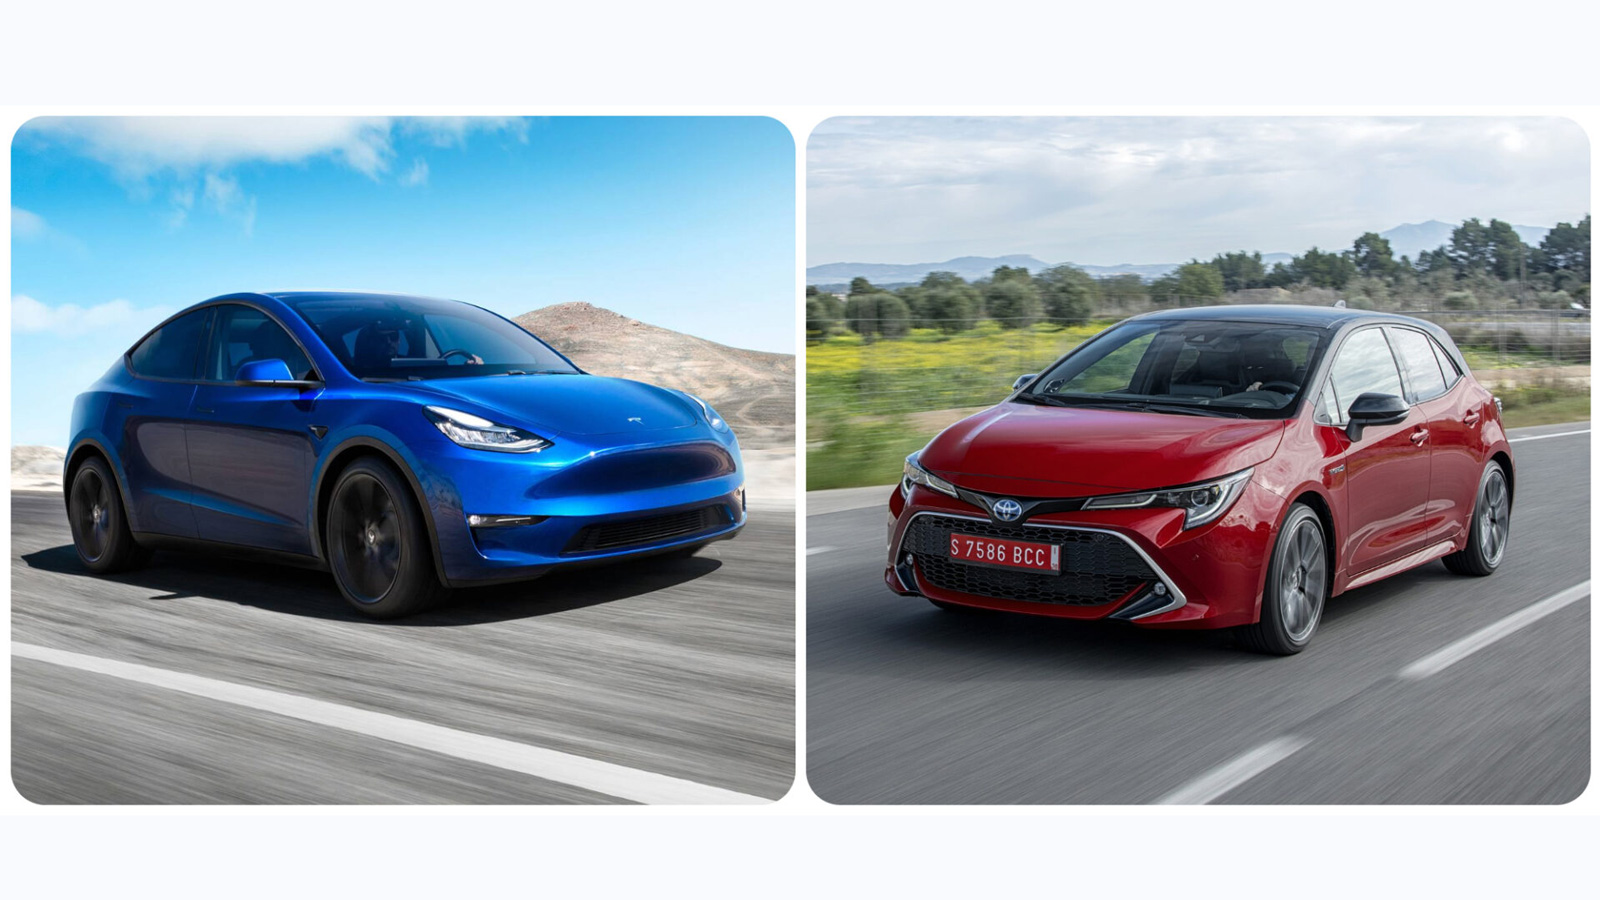 Θα περάσει σε πωλήσεις η Tesla την Toyota Corolla?